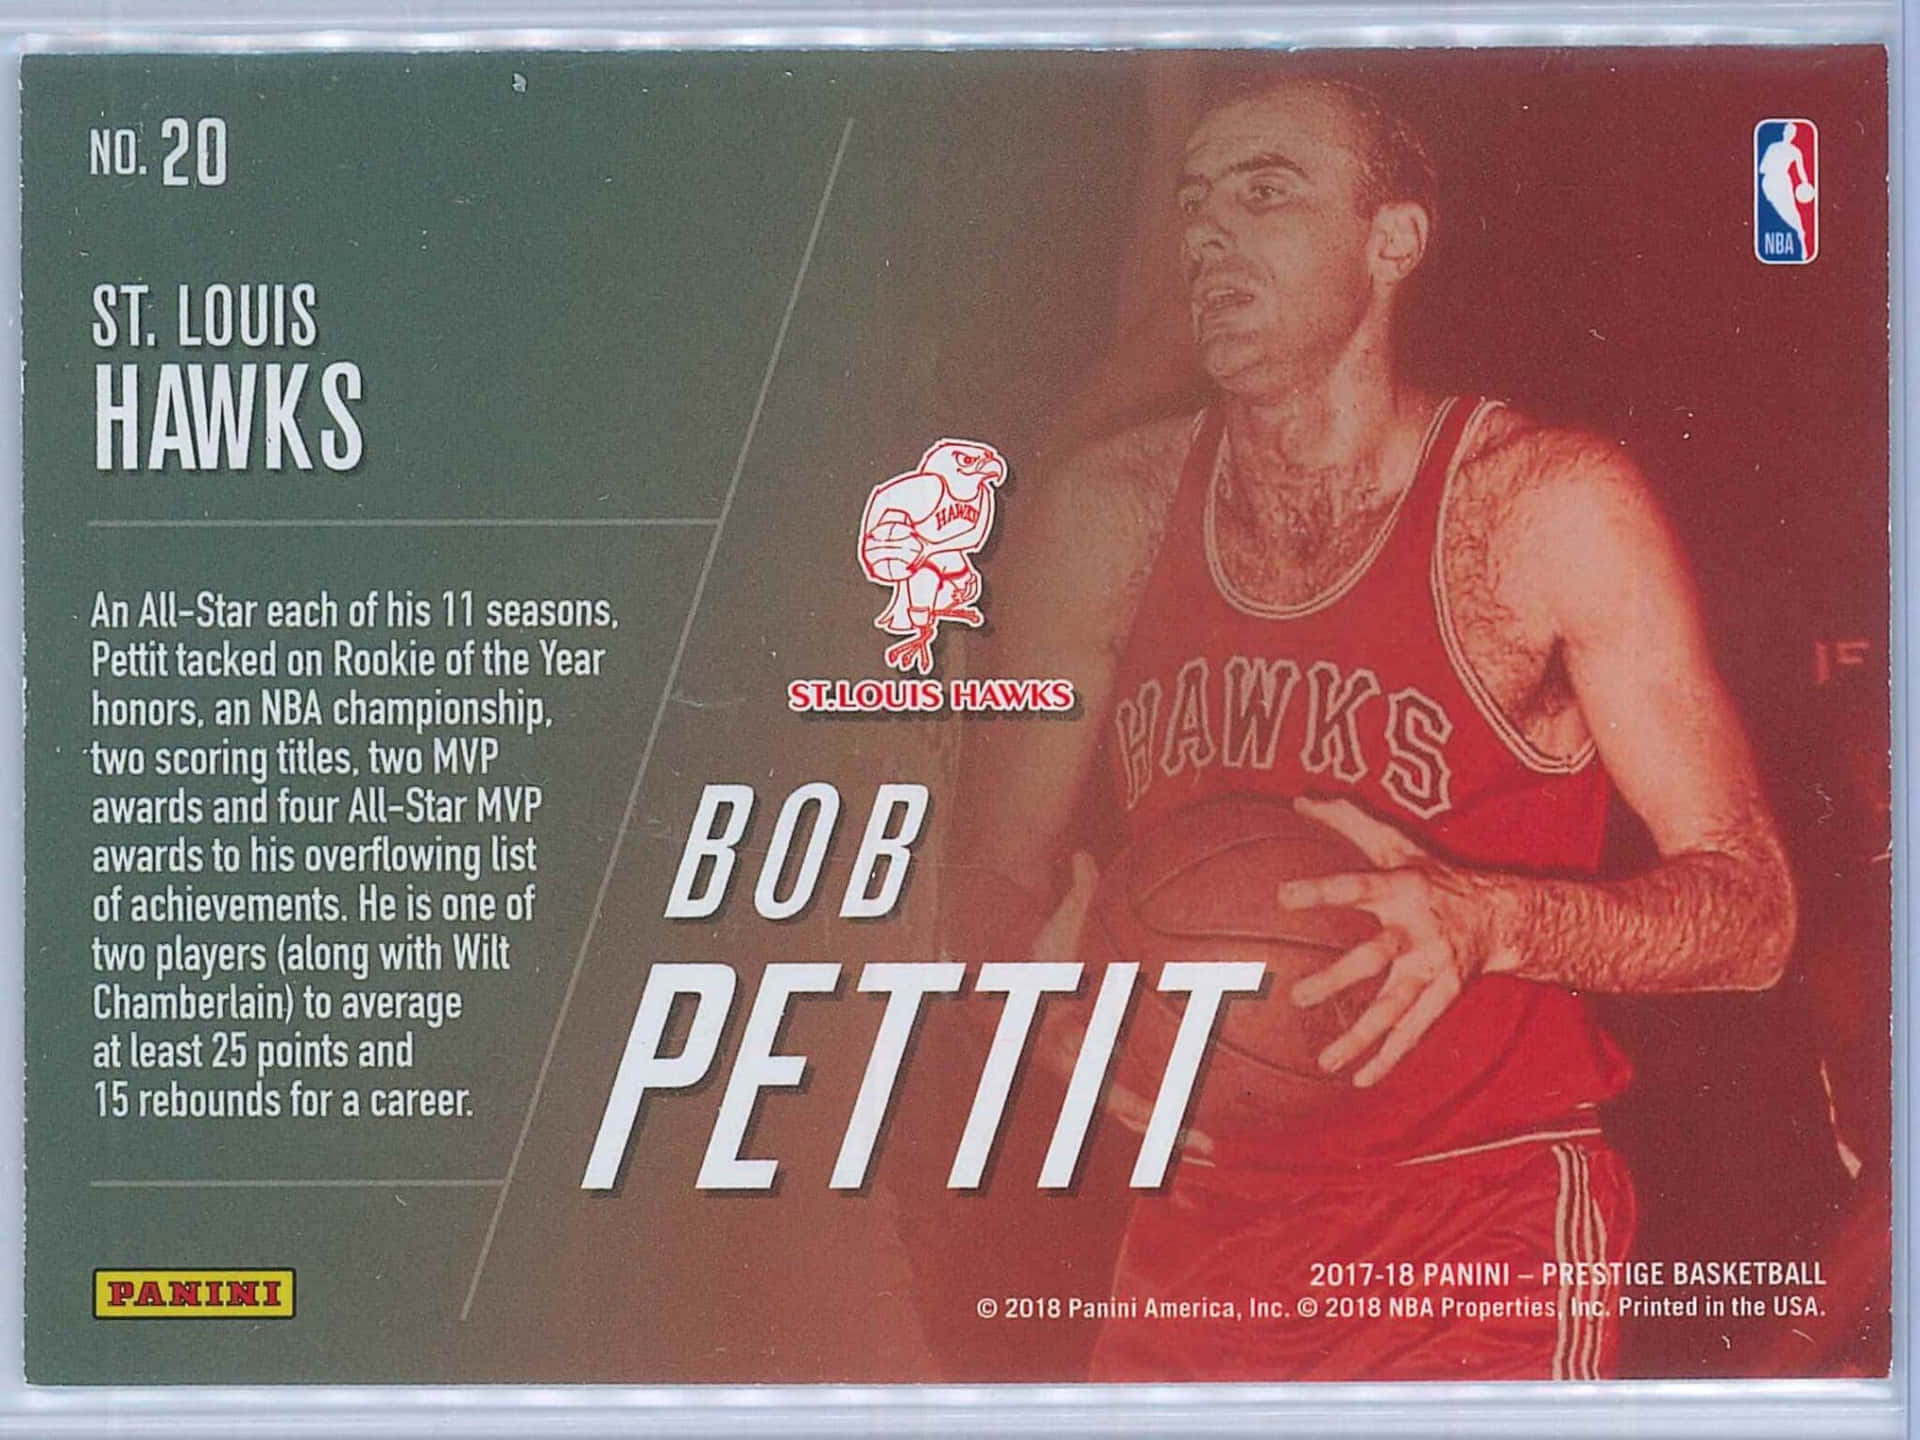 Bob Pettit Basketball Kort Med Oplysninger. Wallpaper